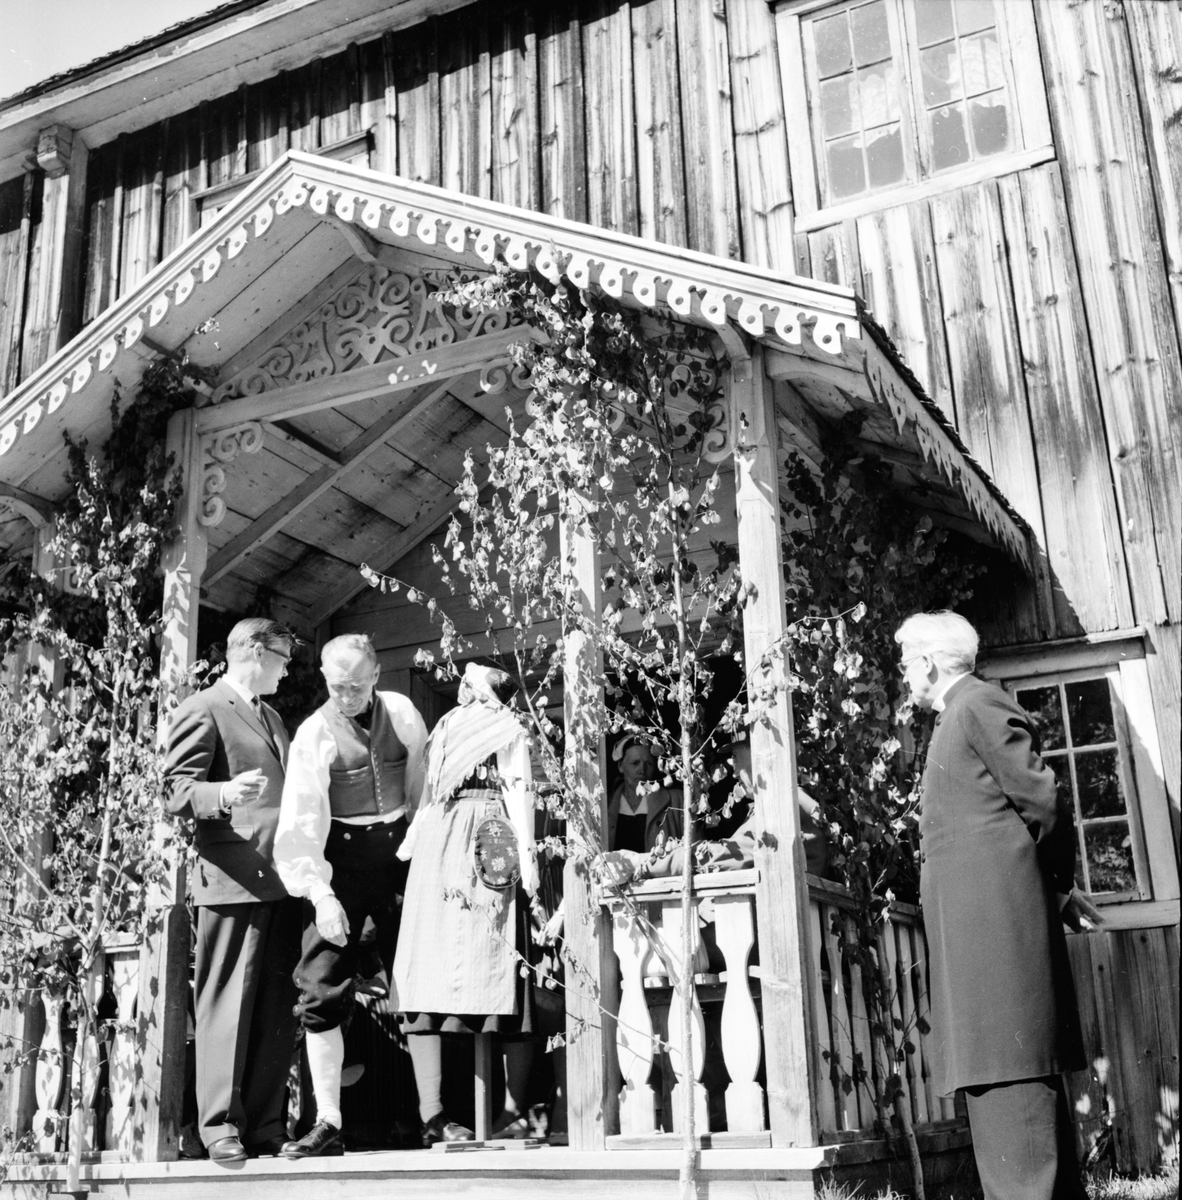 Fågelsjö,
Hembygdsdag,
1 Juli 1962